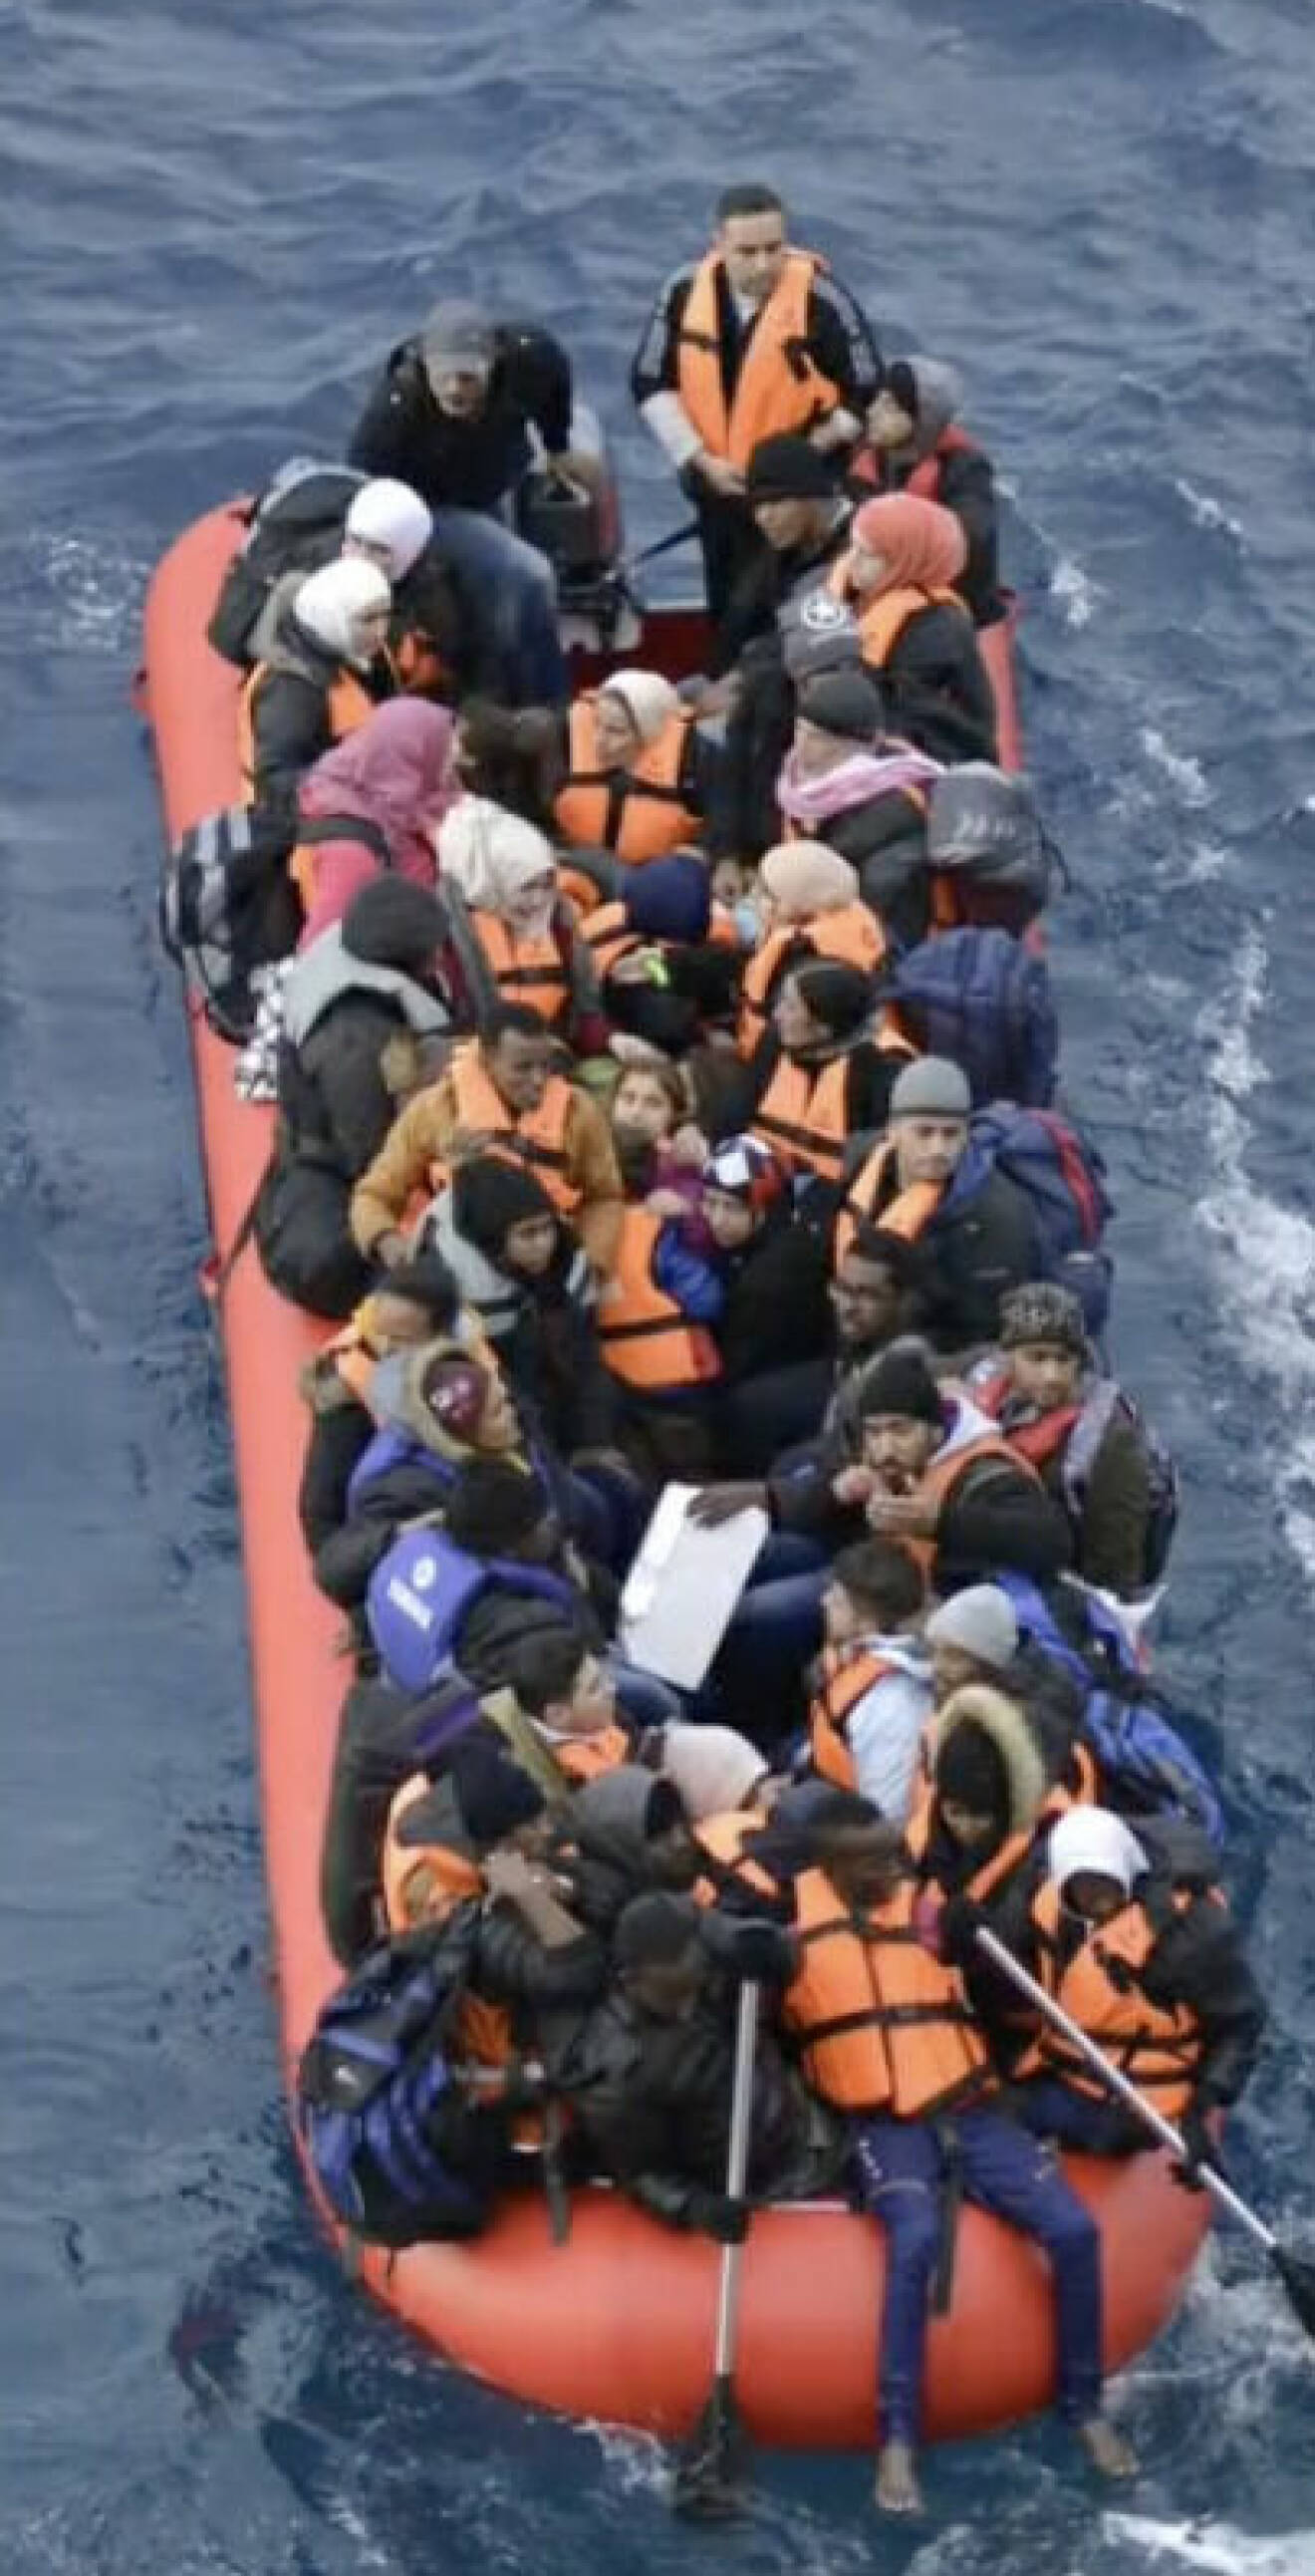 Det var totalt 33 personer som reste på gummibåten byggd för åtta. Benshi berättar för oss att alla på båten klarade den farliga resan över Medelhavet.